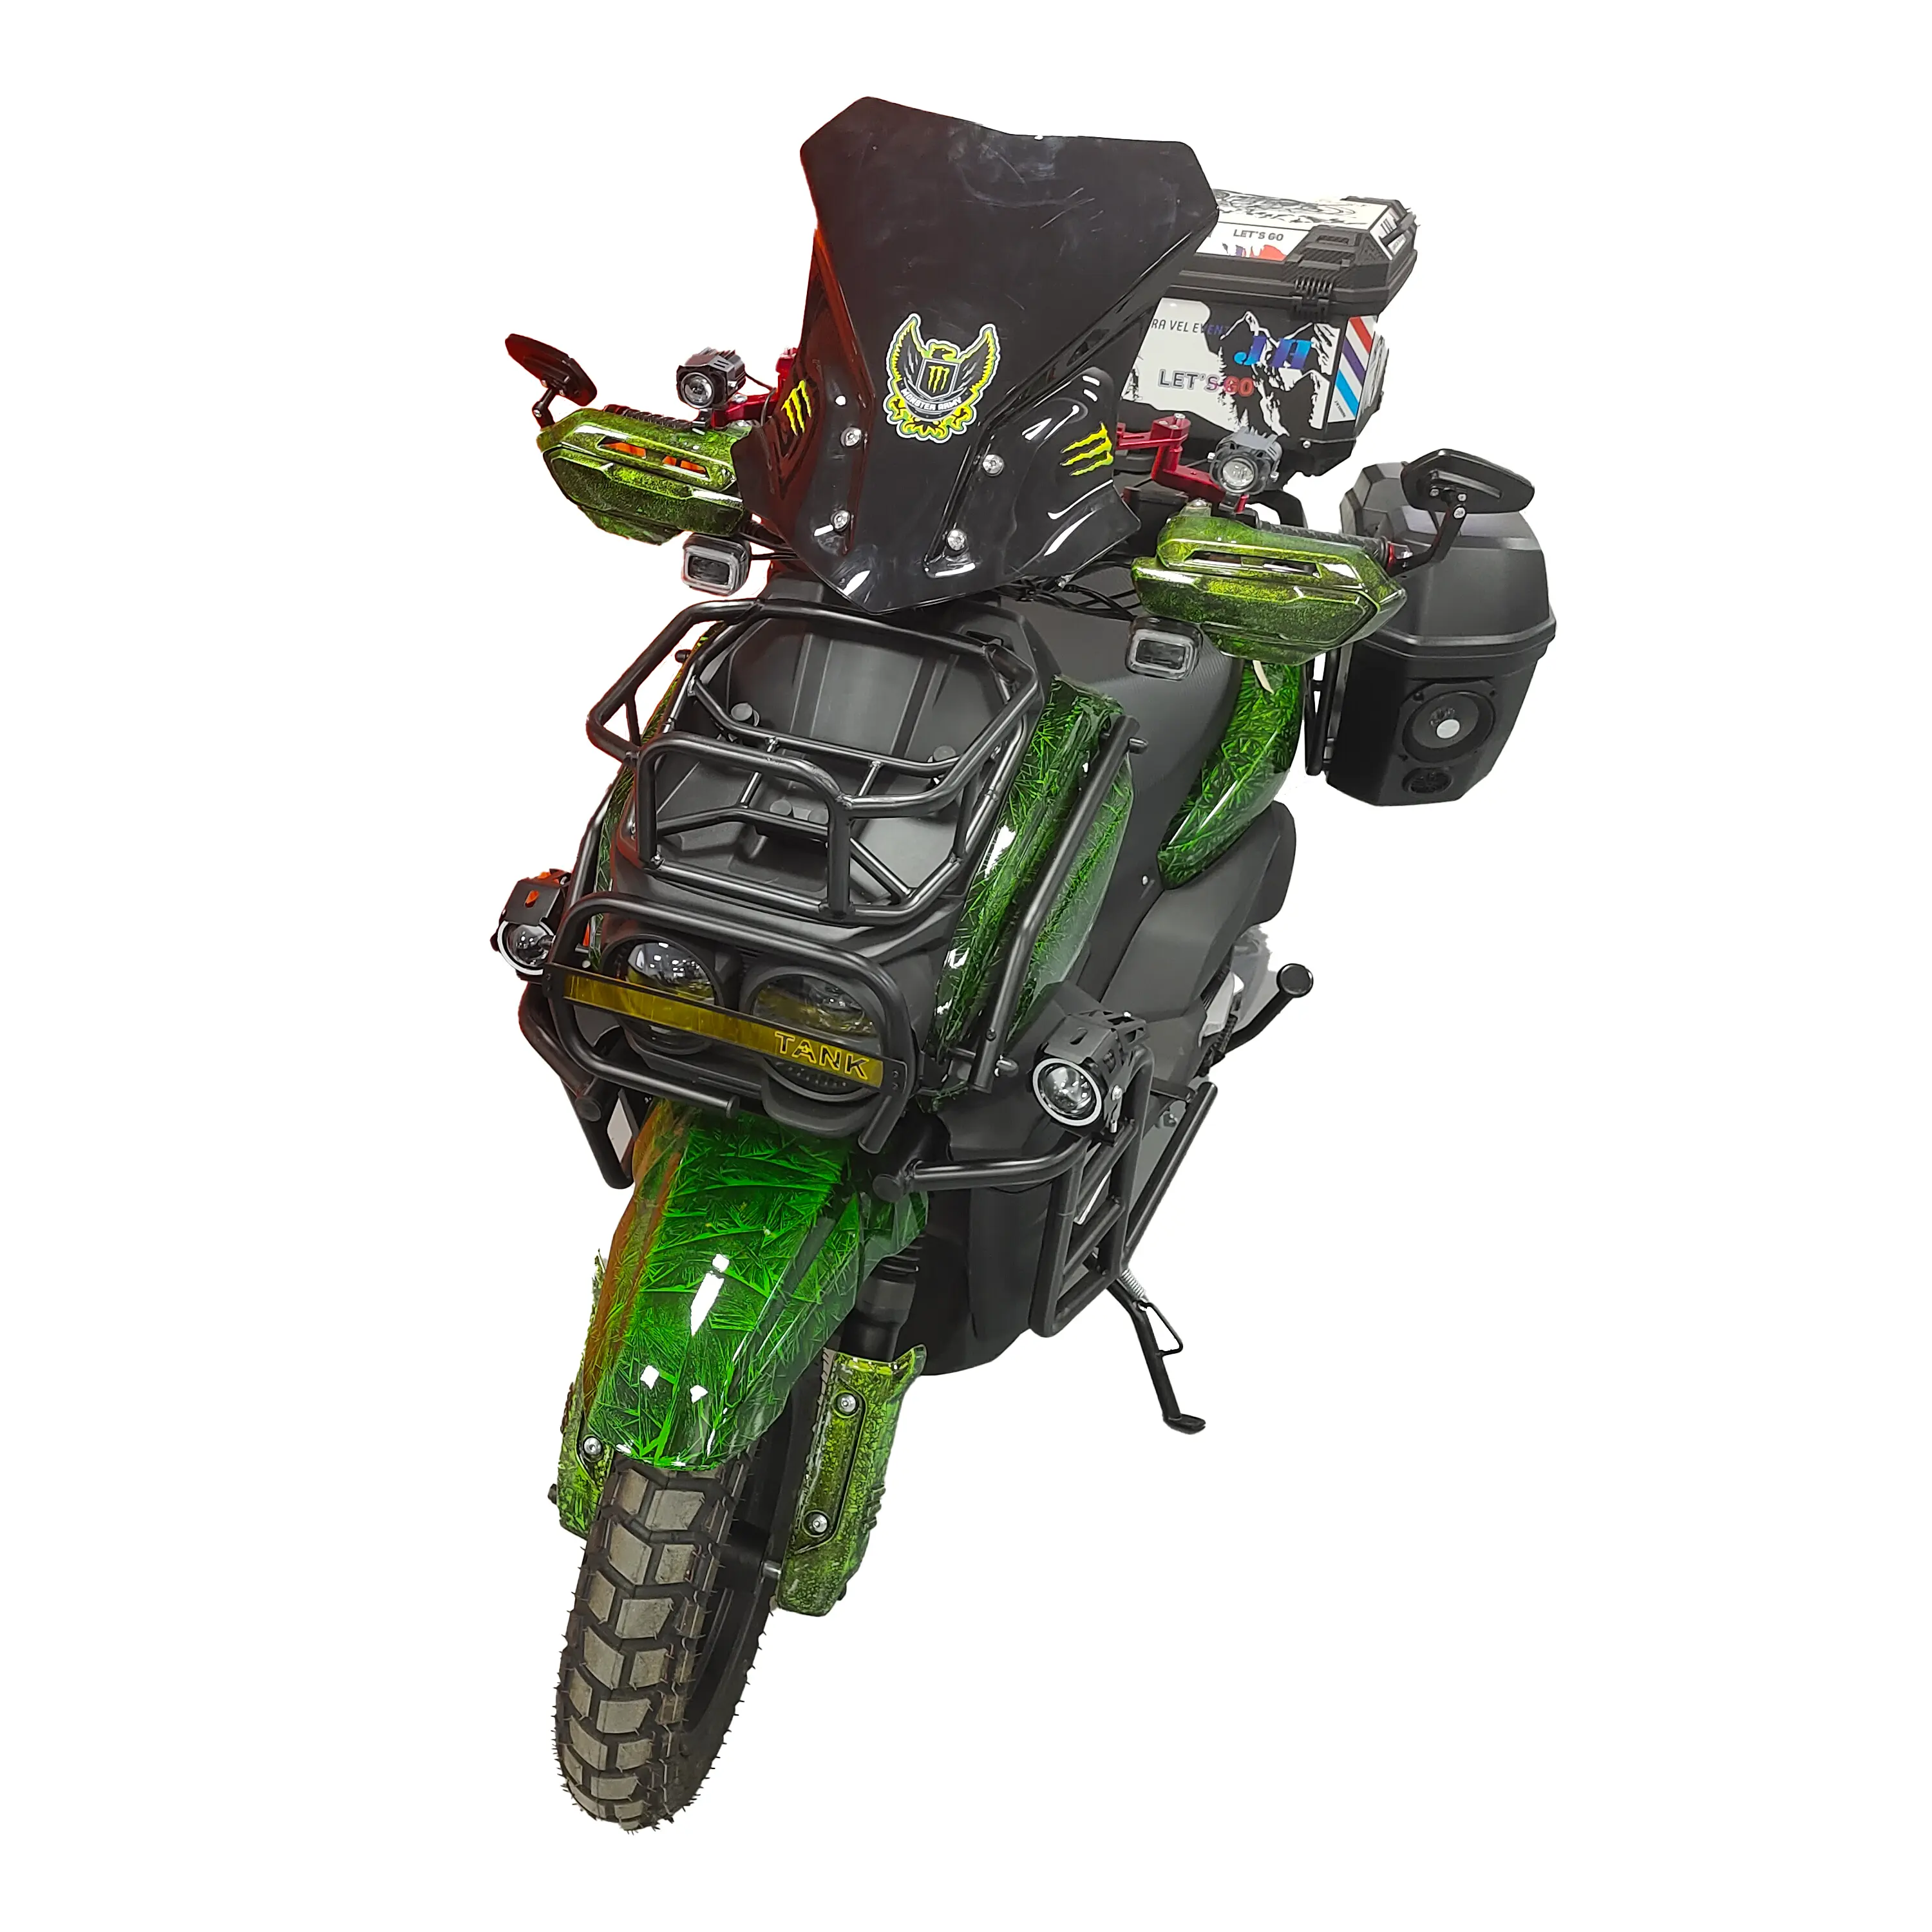 Moto à essence Motocyclette à essence Motocross 150cc Cyclomoteur monocylindre Scooter moto électrique